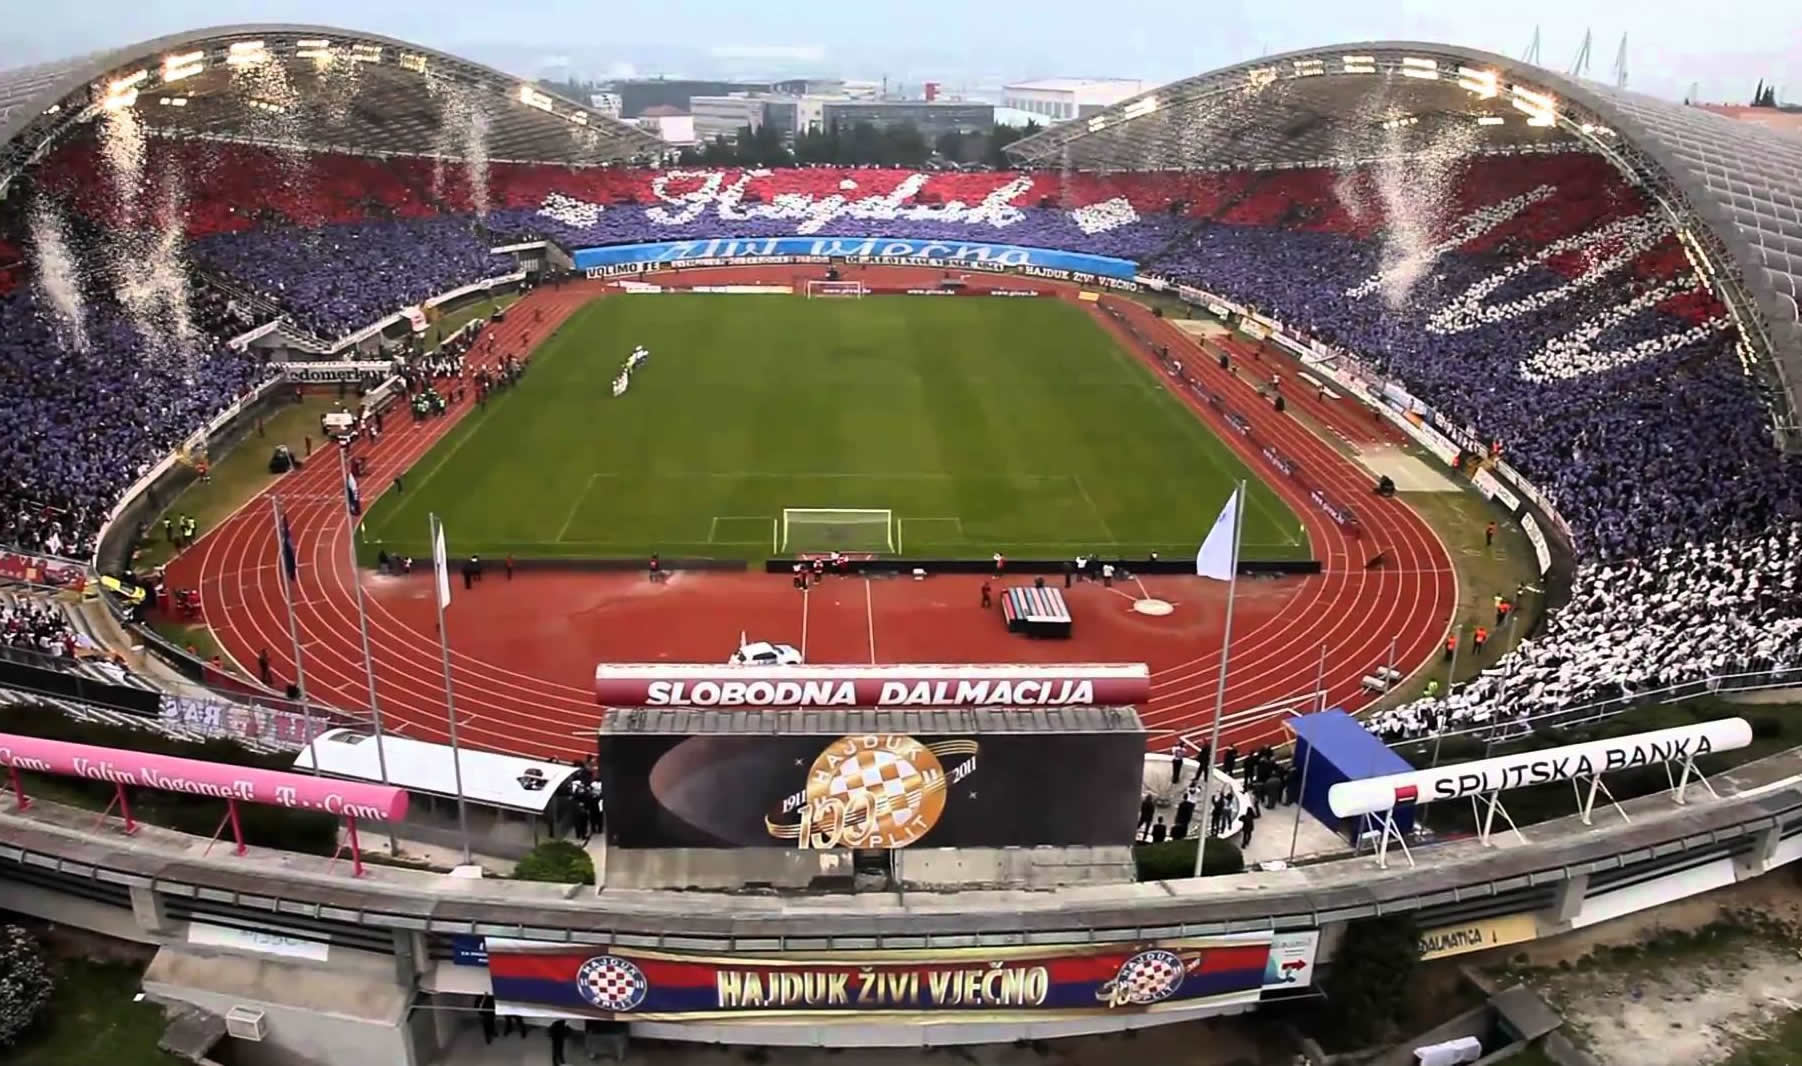 HNK Hajduk Split vs NK Varaždin Gradski Stadion Poljud Split Tickets